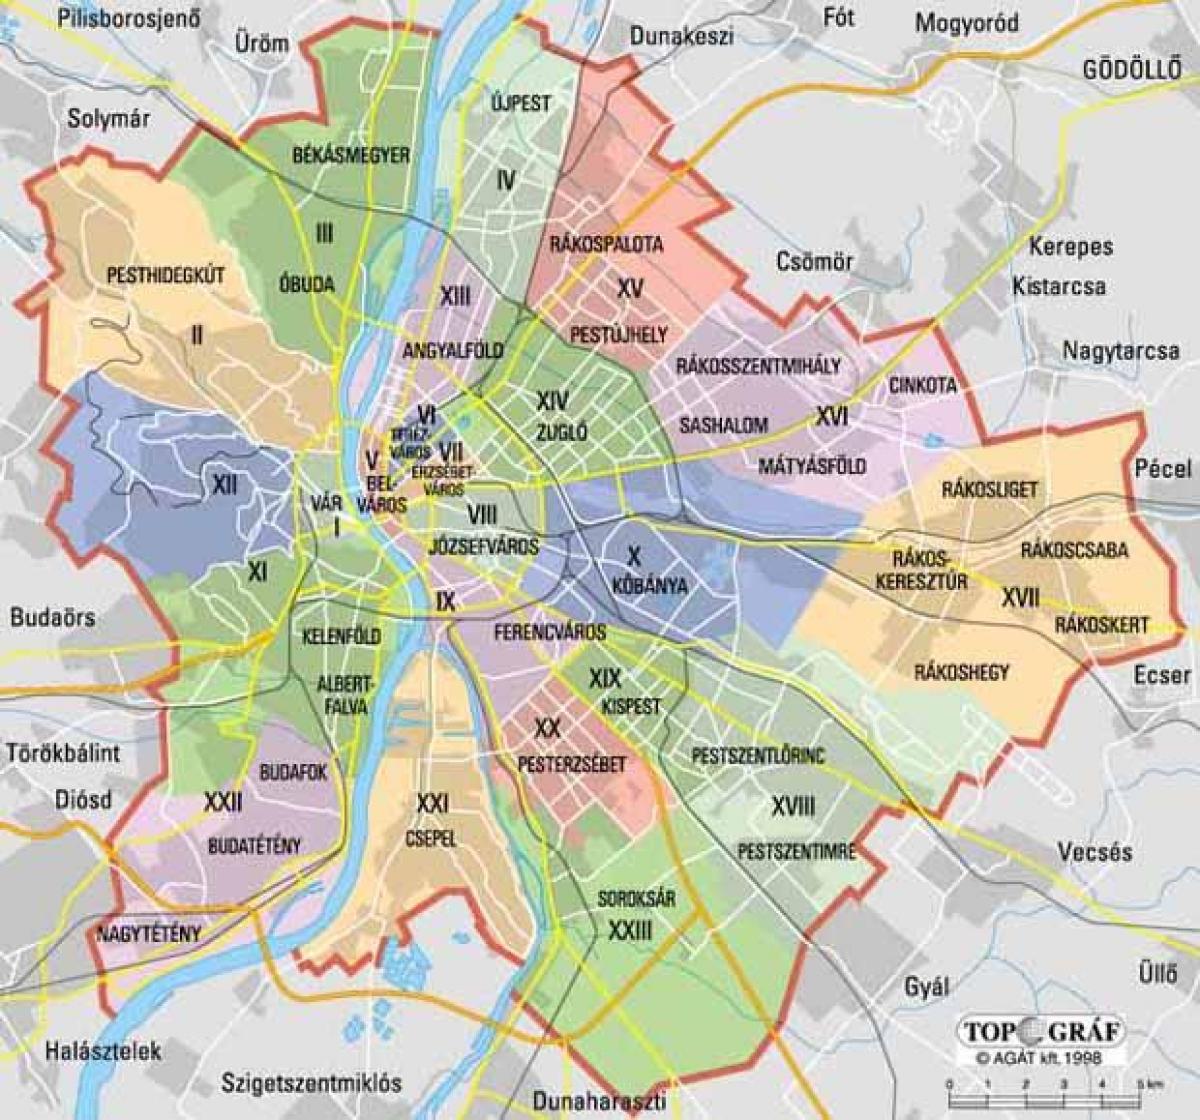 Mappa del quartiere di Budapest